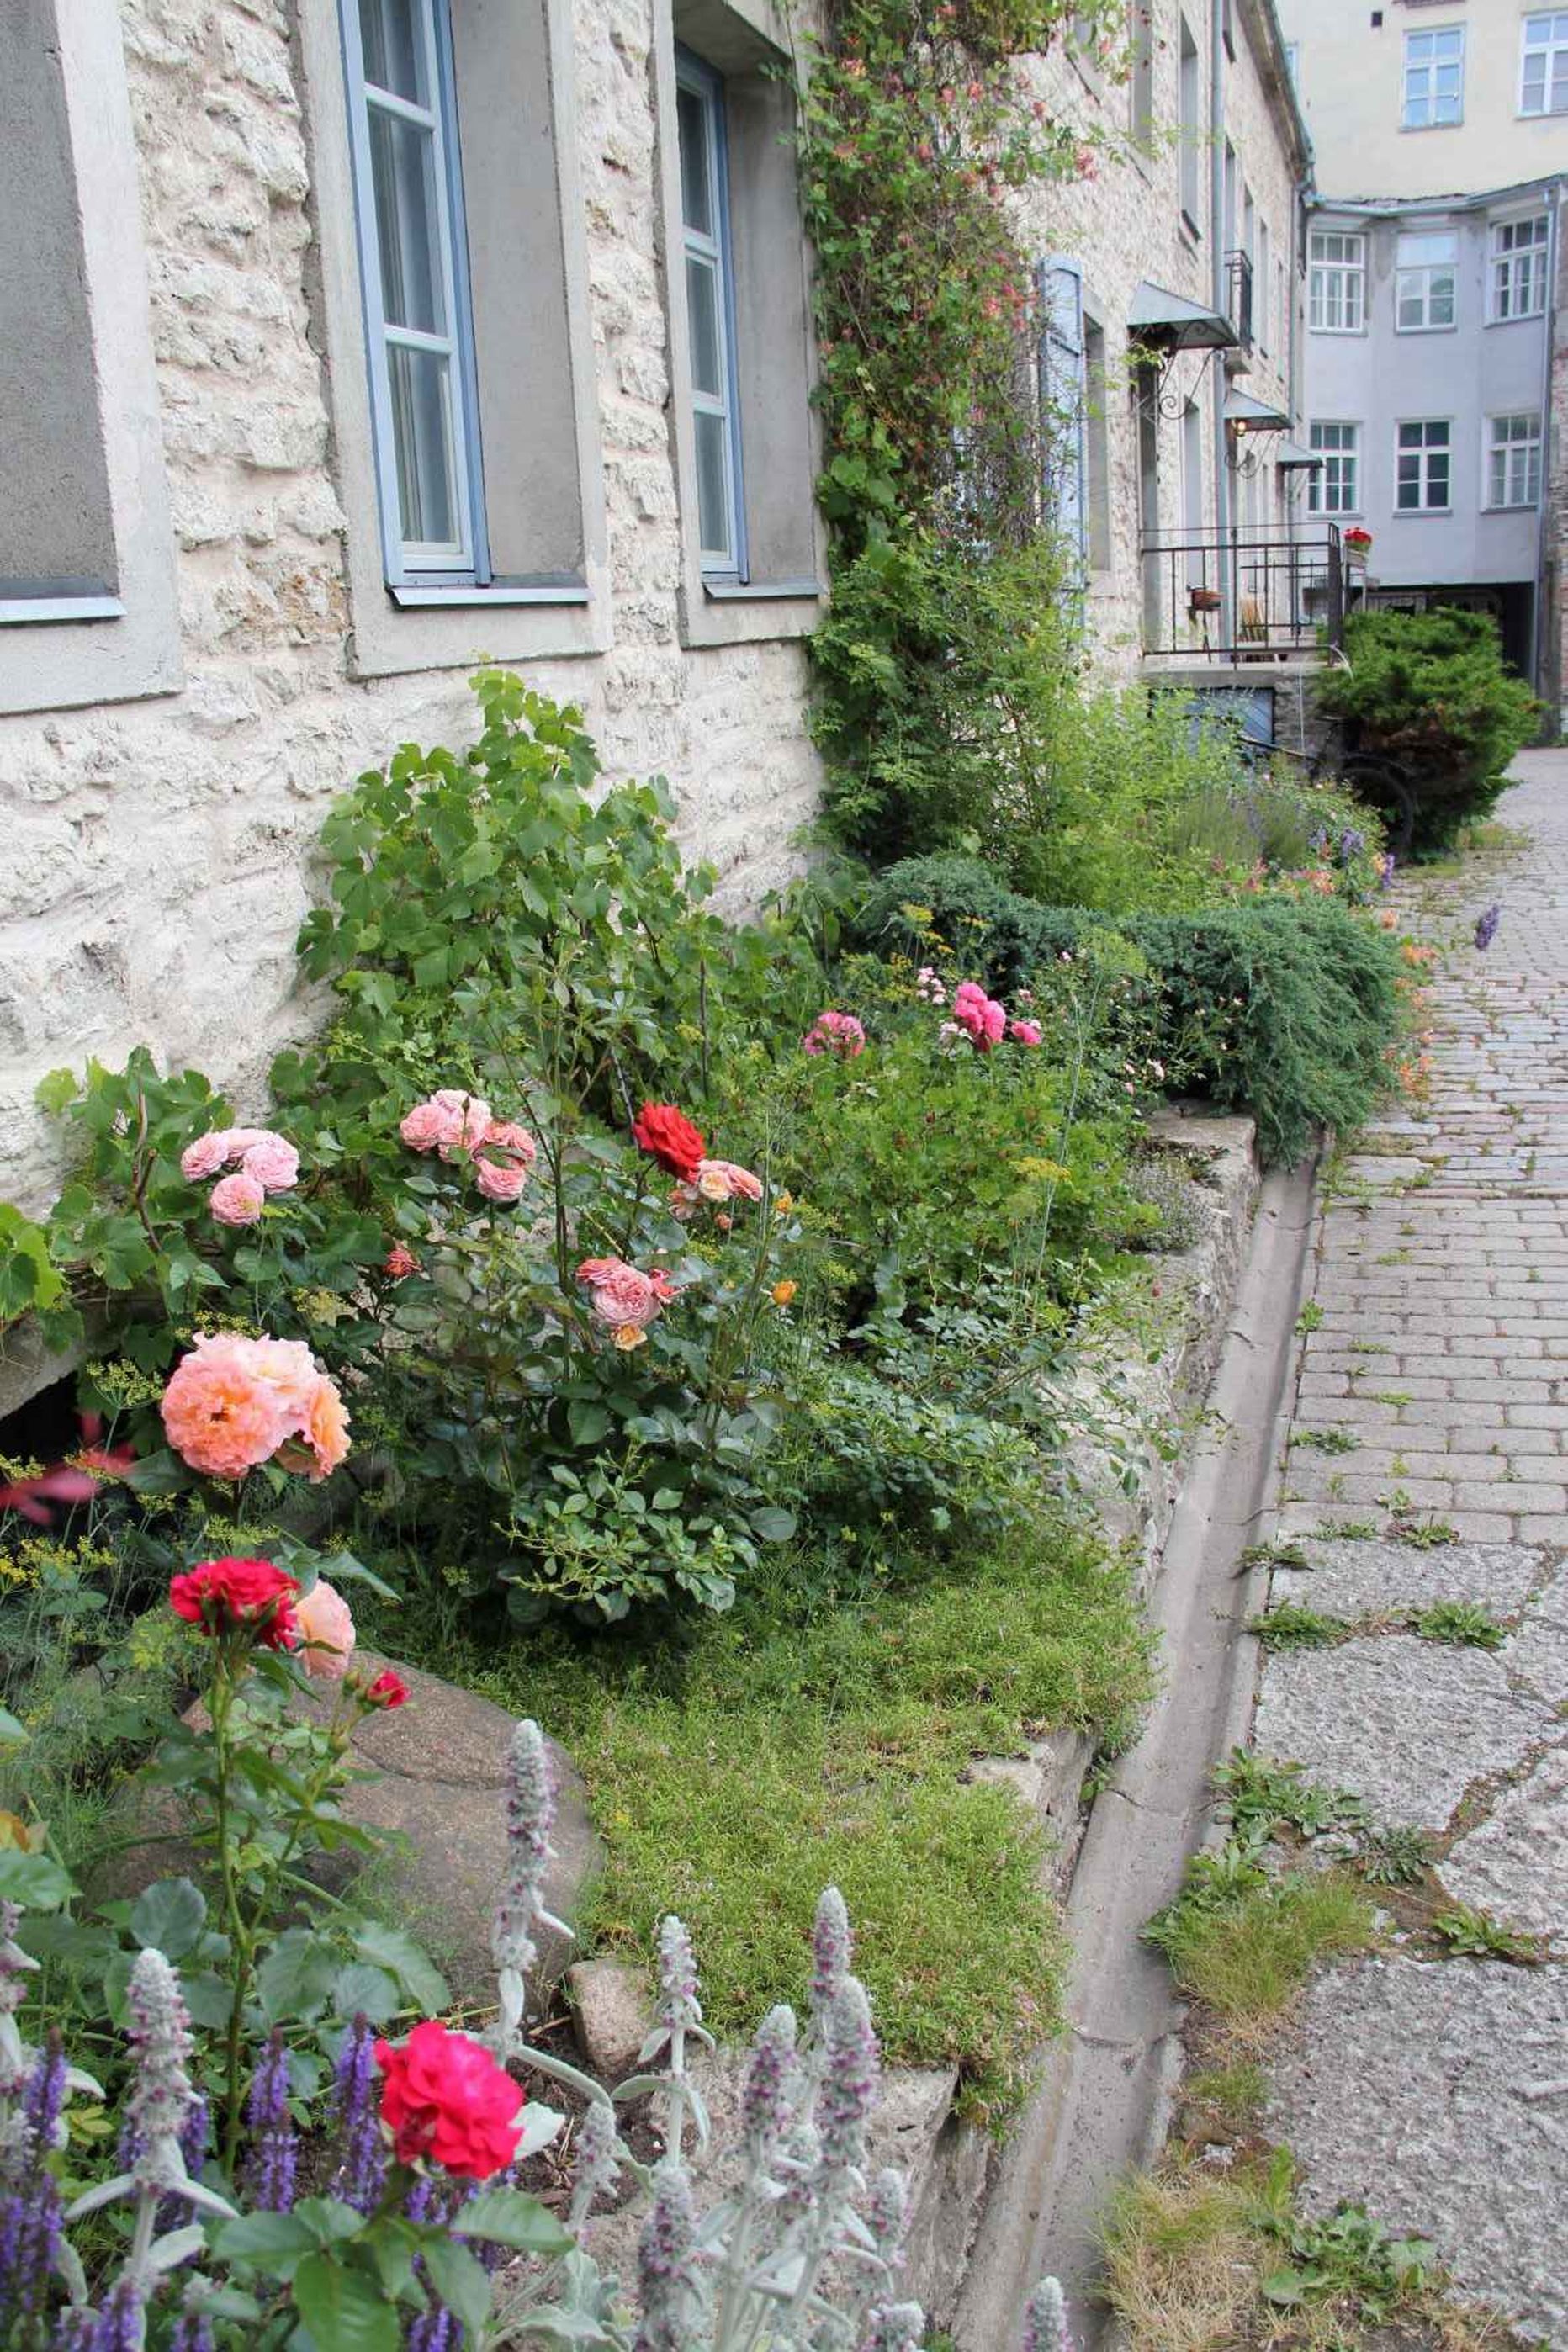 Tallinna vanalinna kauneimaks aiaks valiti tänavu Müürivahe 31.